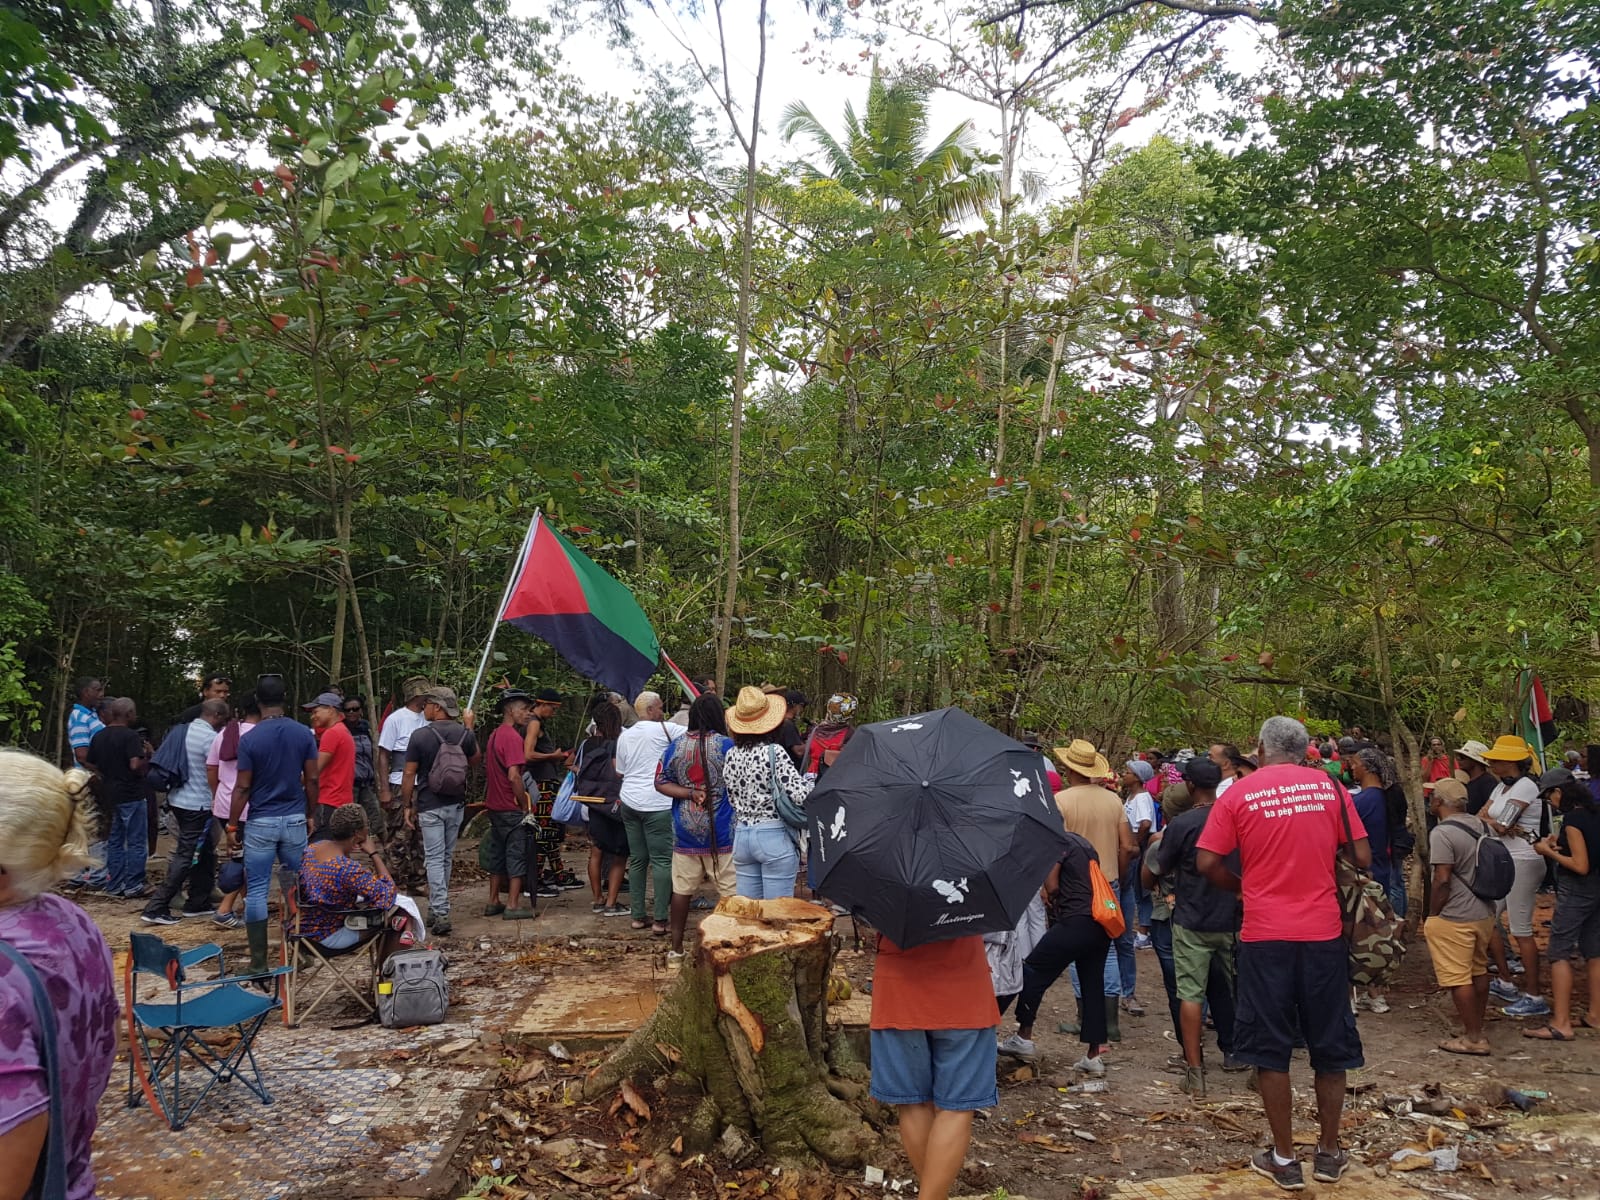     L'Assaupamar mobilisée contre la construction de logements sur une mangrove à l'Anse Mitan

